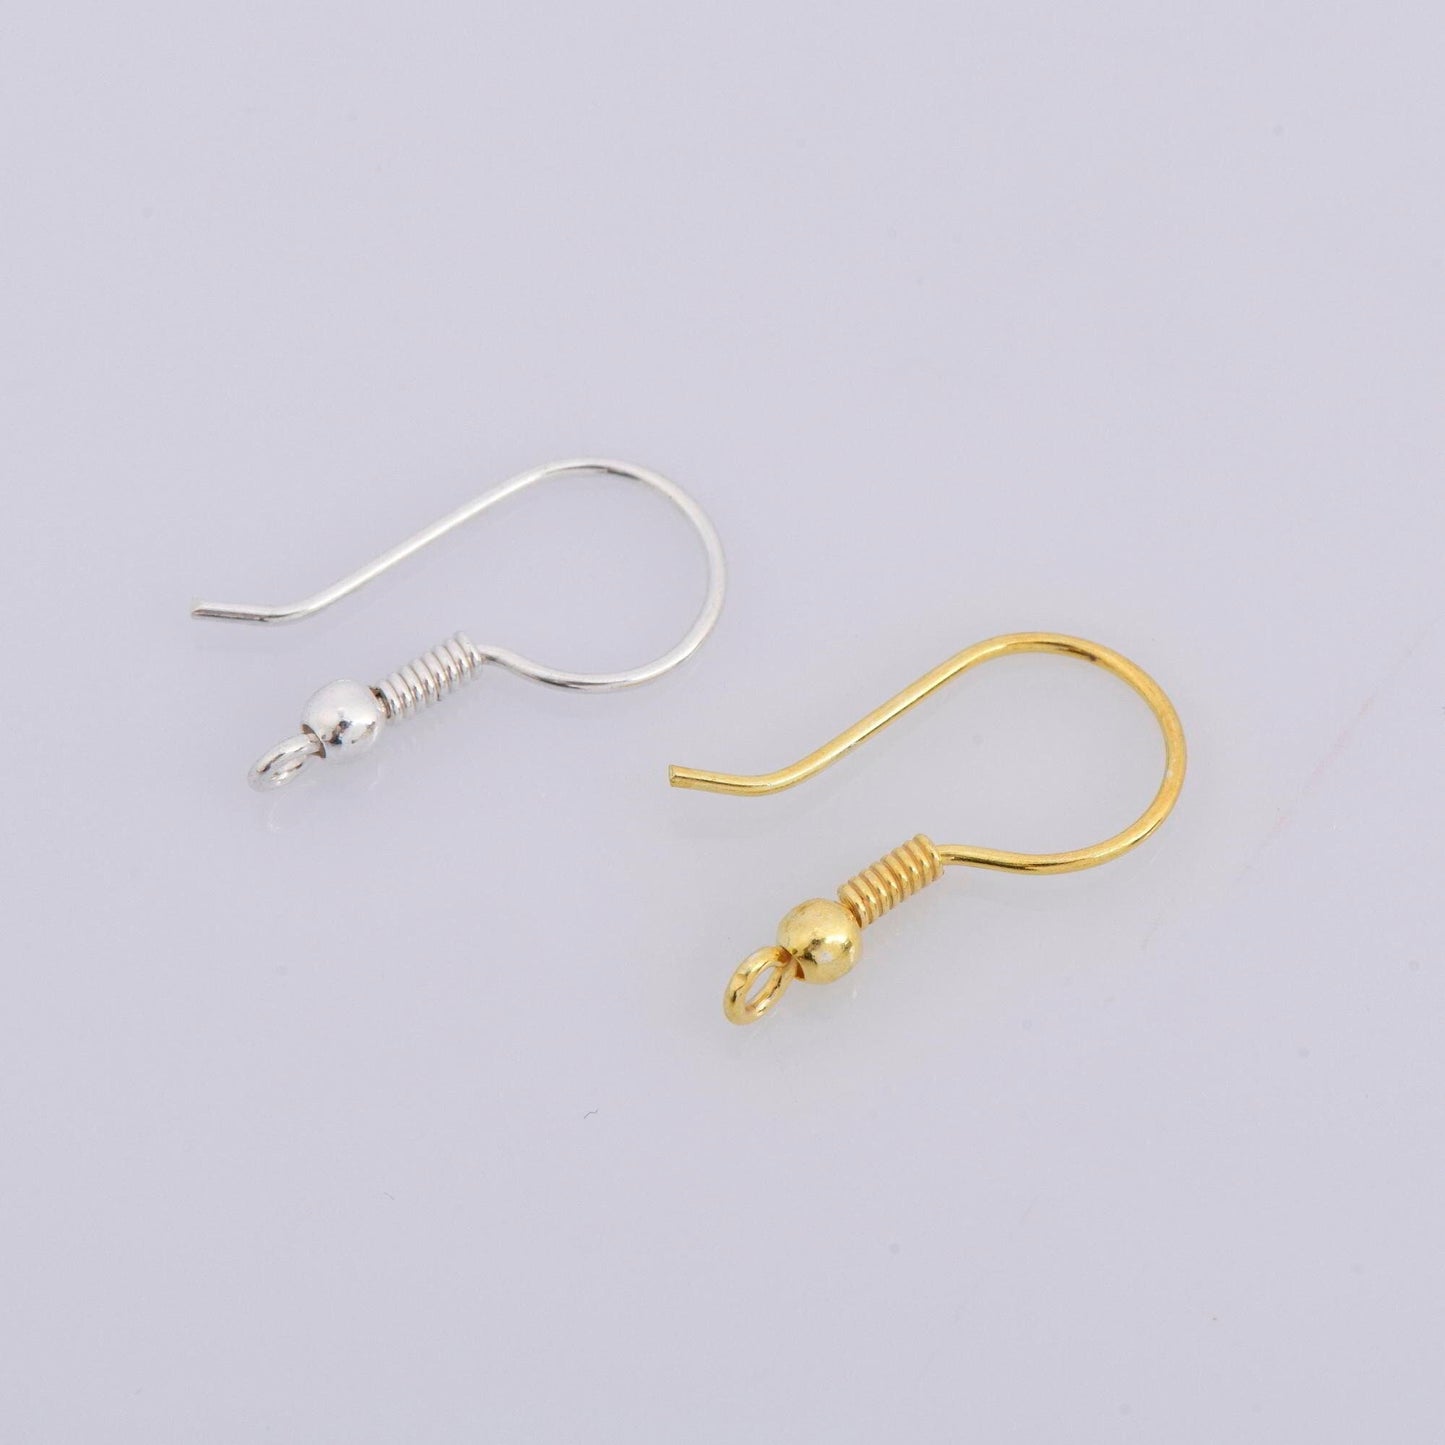 24K Gold Vermeil Ear Wires, Sterling Silver Earring Hooks in 24K Gold, Ball Ear Wires, Earrings Making Supply, Jewelry Findings, M39/VM39